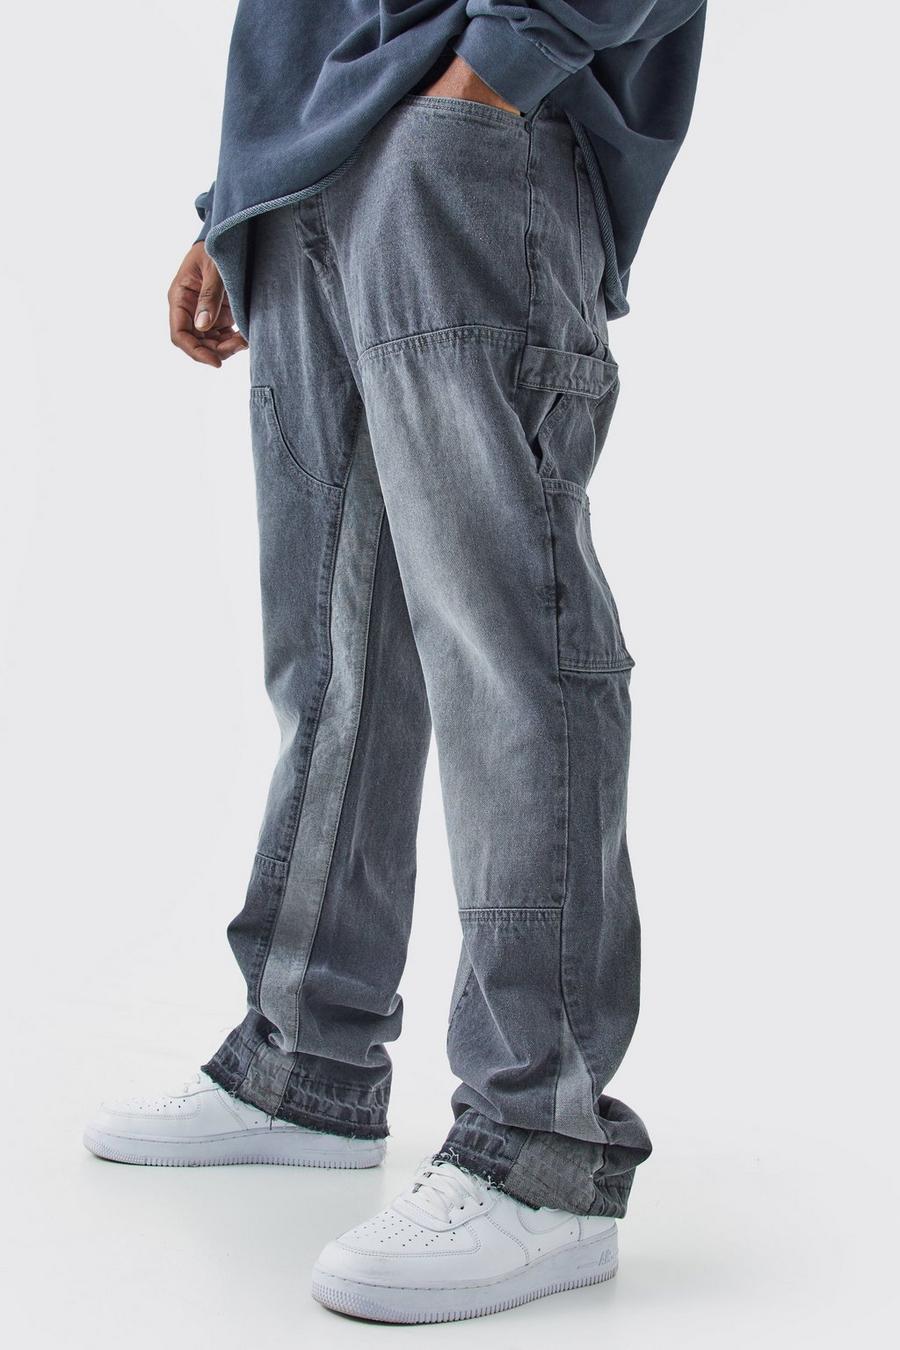 Jeans Plus Size Slim Fit in denim rigido con inserti stile Carpenter, Grey